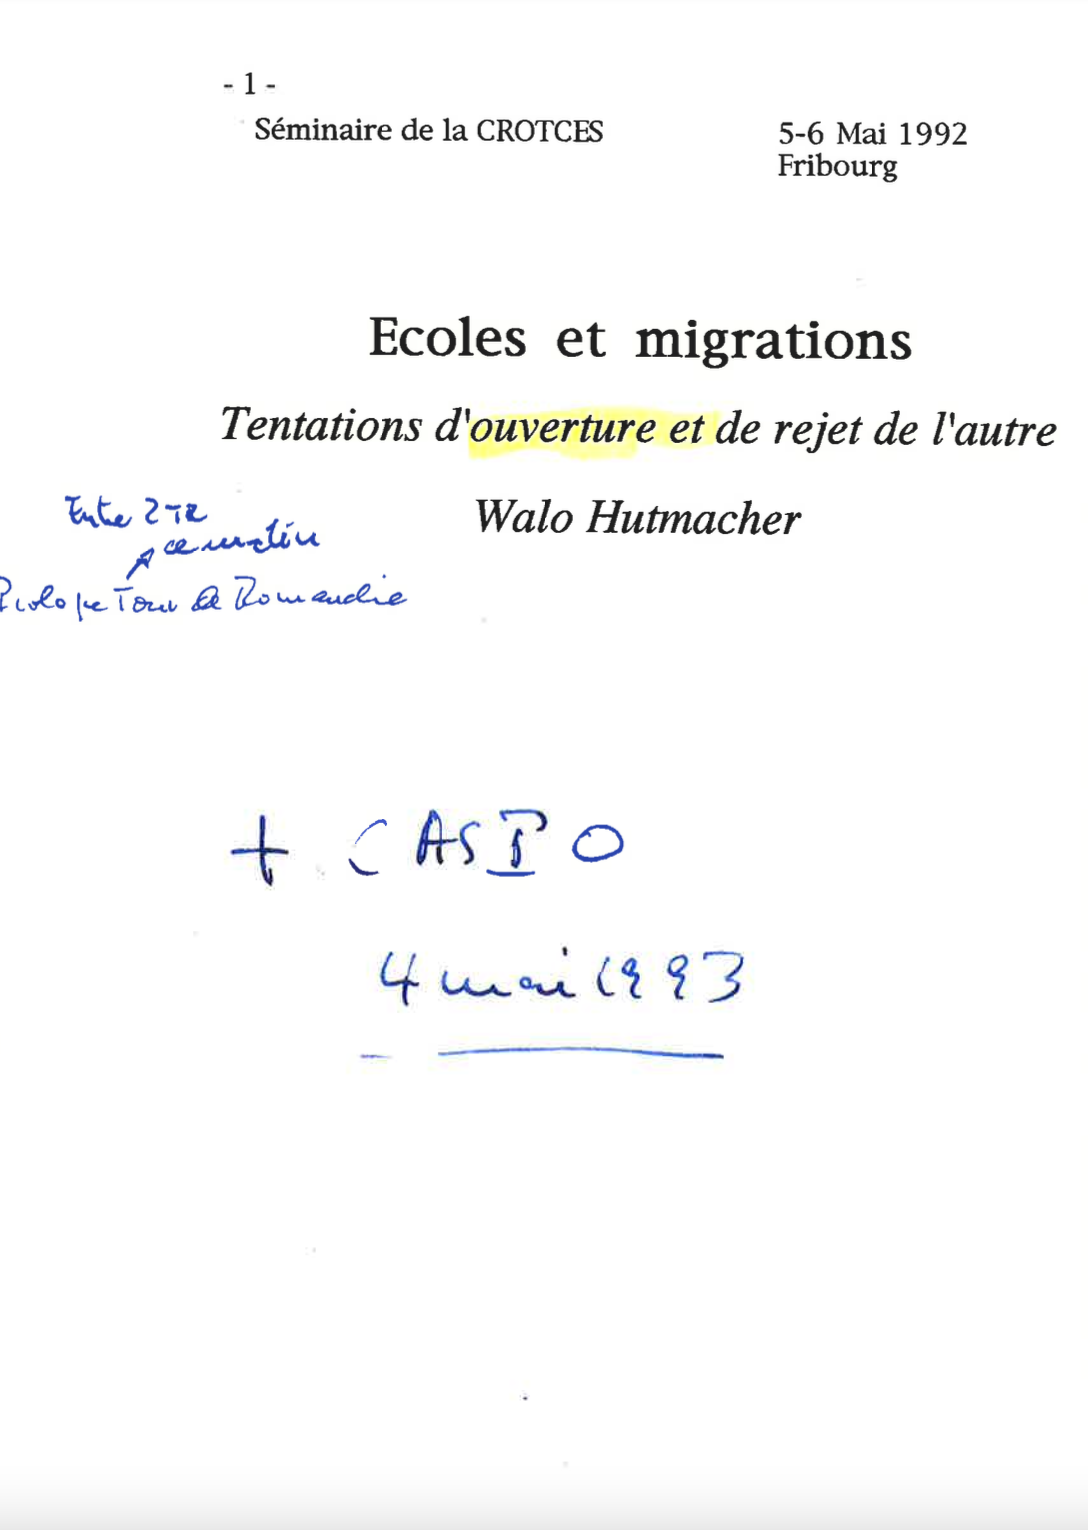 Hutmacher_1992_Ecoles et migrations_Tentations_ouverture et de rejet de_autre.png